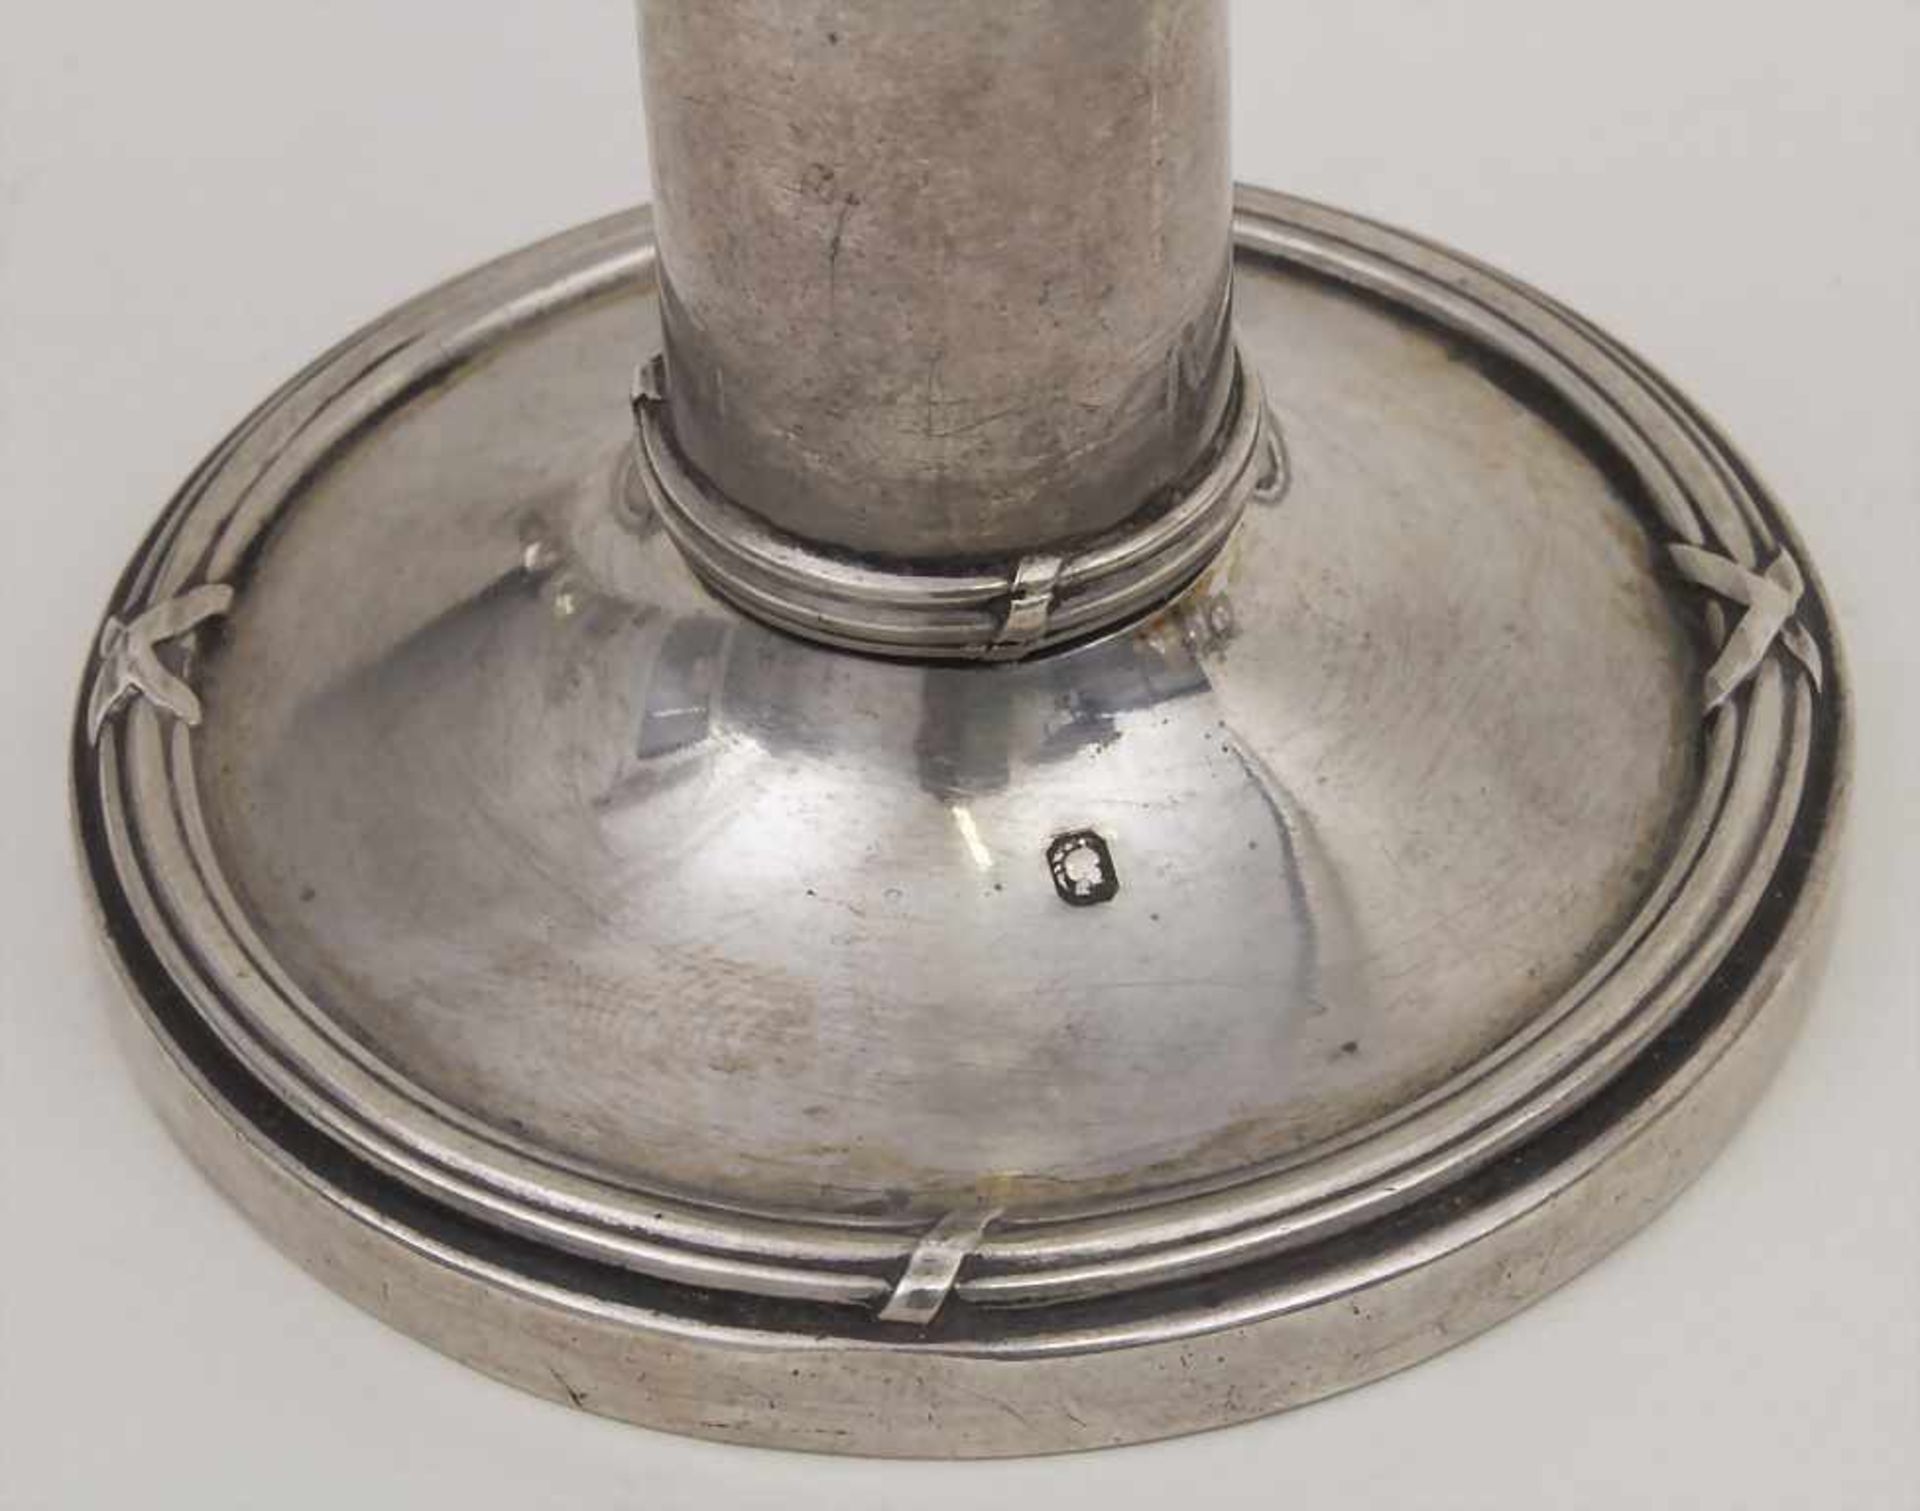 Tischleuchter / A candle holder, Paris, um 1870 Material: 950er Silber, Punzierung: Minerva Kopf, - Bild 3 aus 3